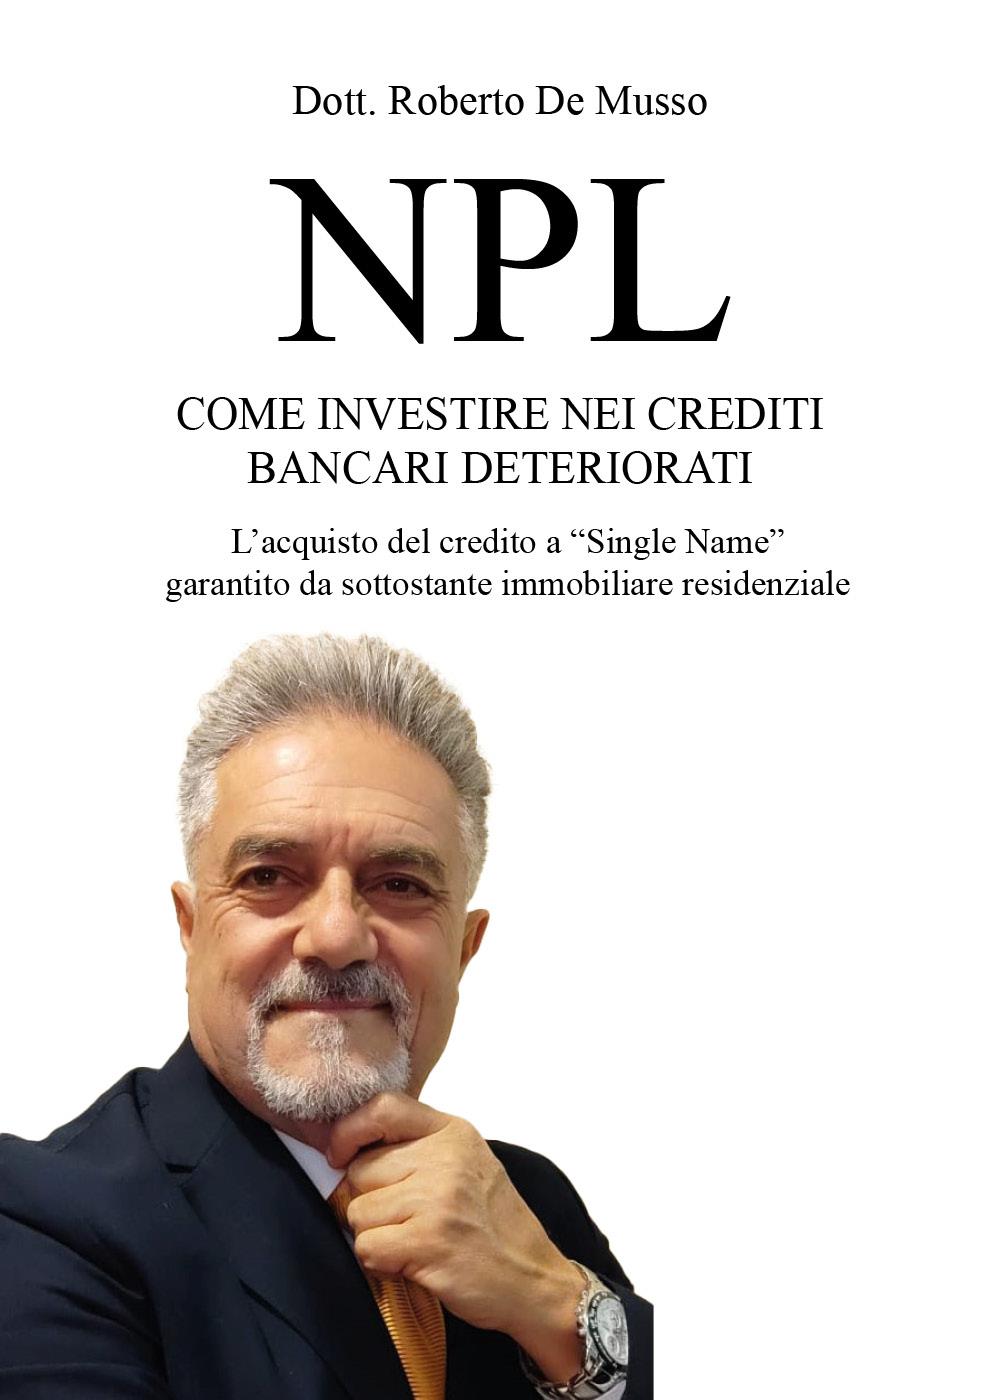 NPL - Come investire nei crediti bancari deteriorati. L'acquisto del credito a "Single Name" garantito da sottostante immobiliare residenziale